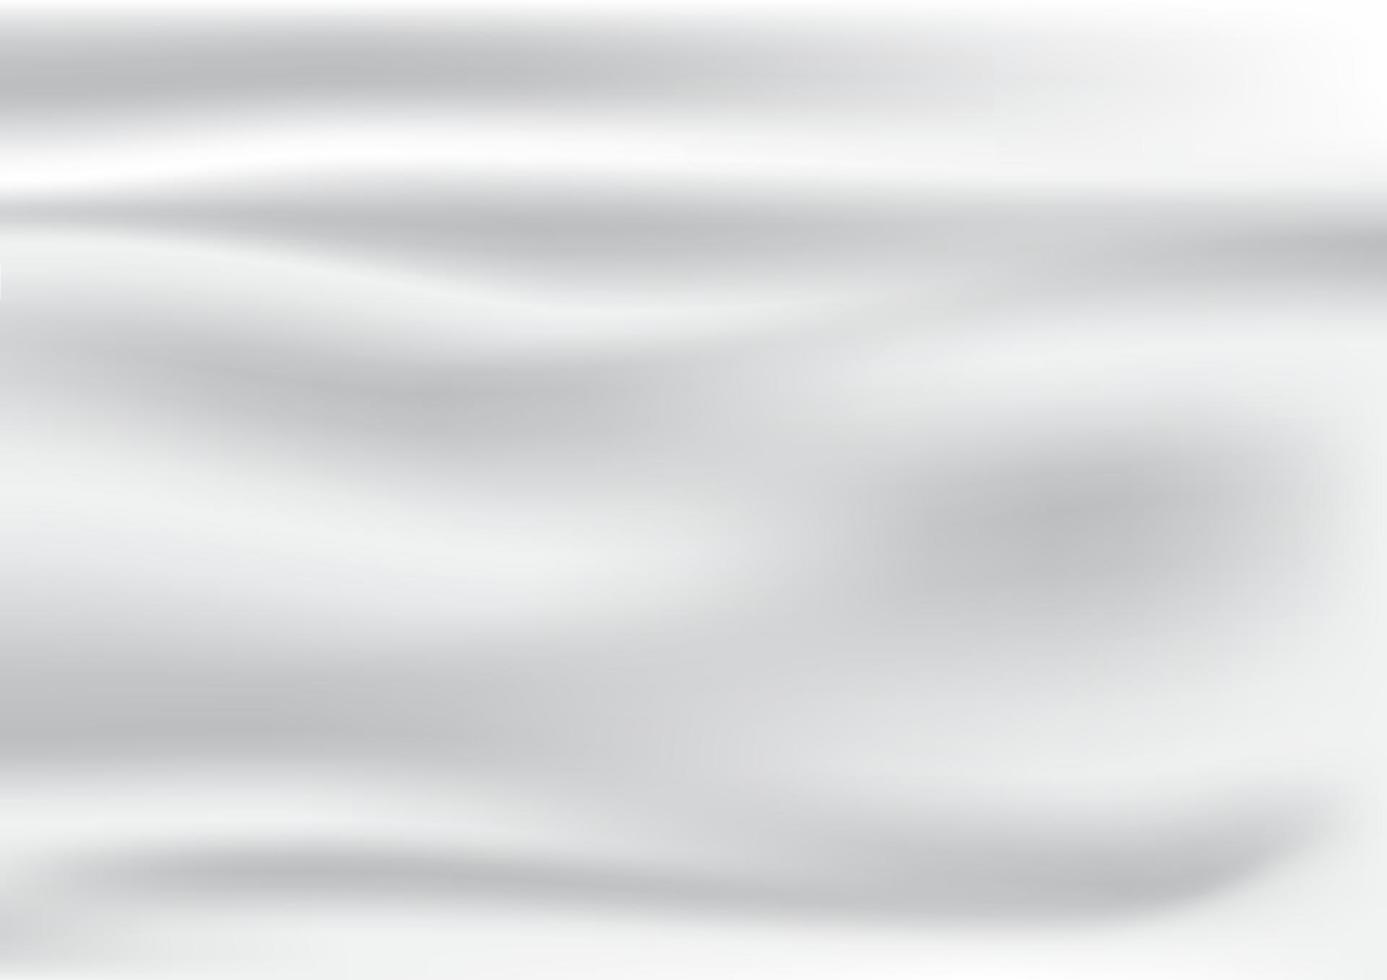 abstrakta rynkor av vit satin och silke tyger bakgrund och textur i vektordesign. vektor